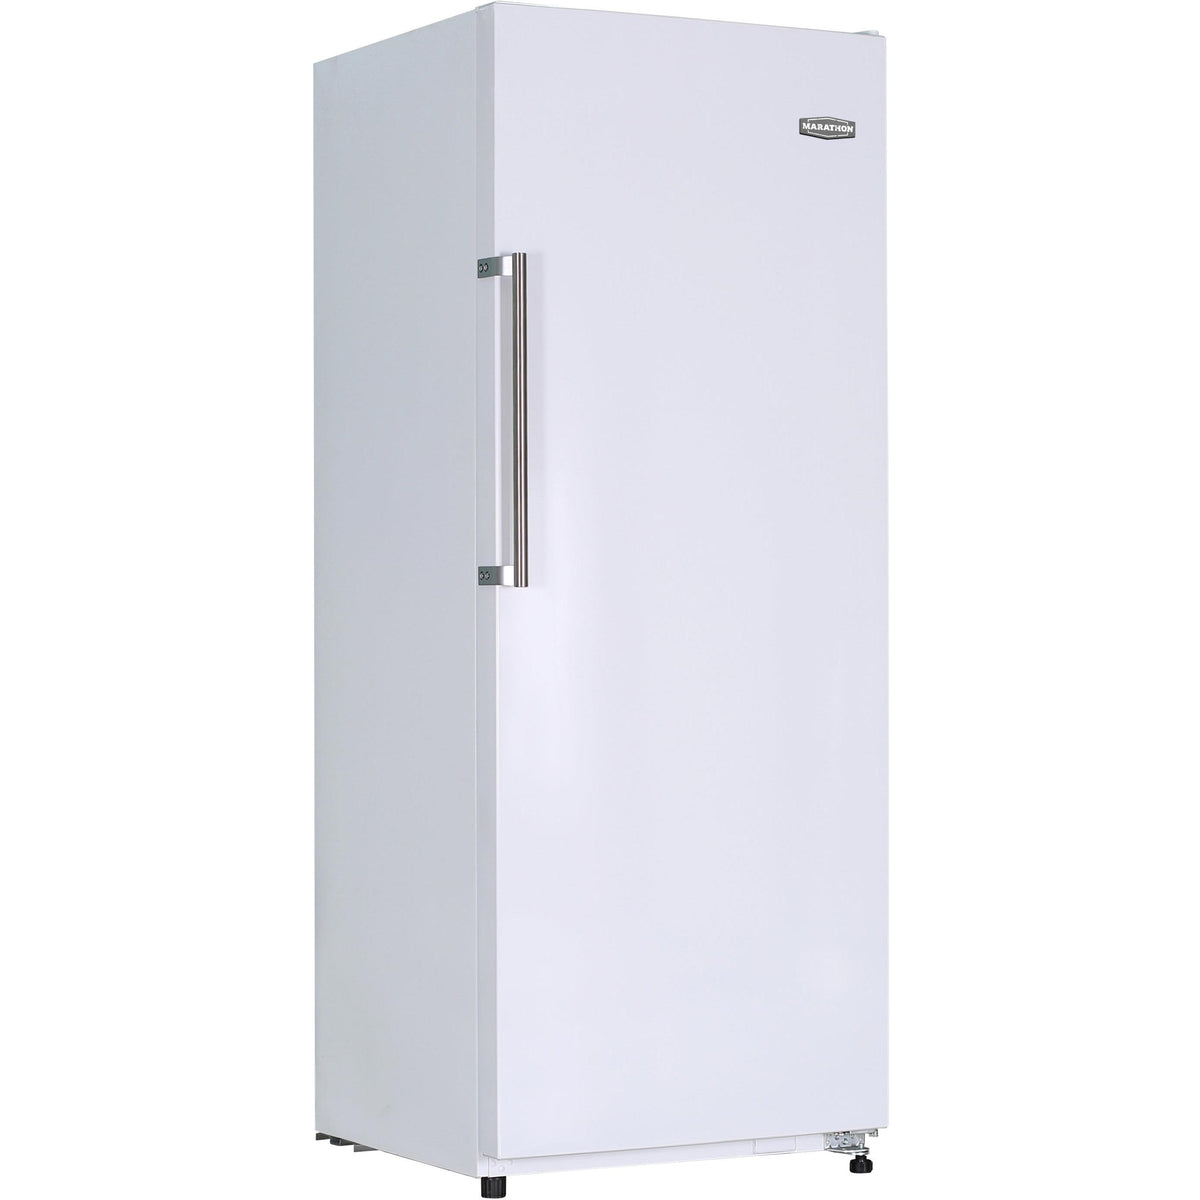 27.8-inch, 14.9 cu. ft. All Refrigerator MAR149W IMAGE 1